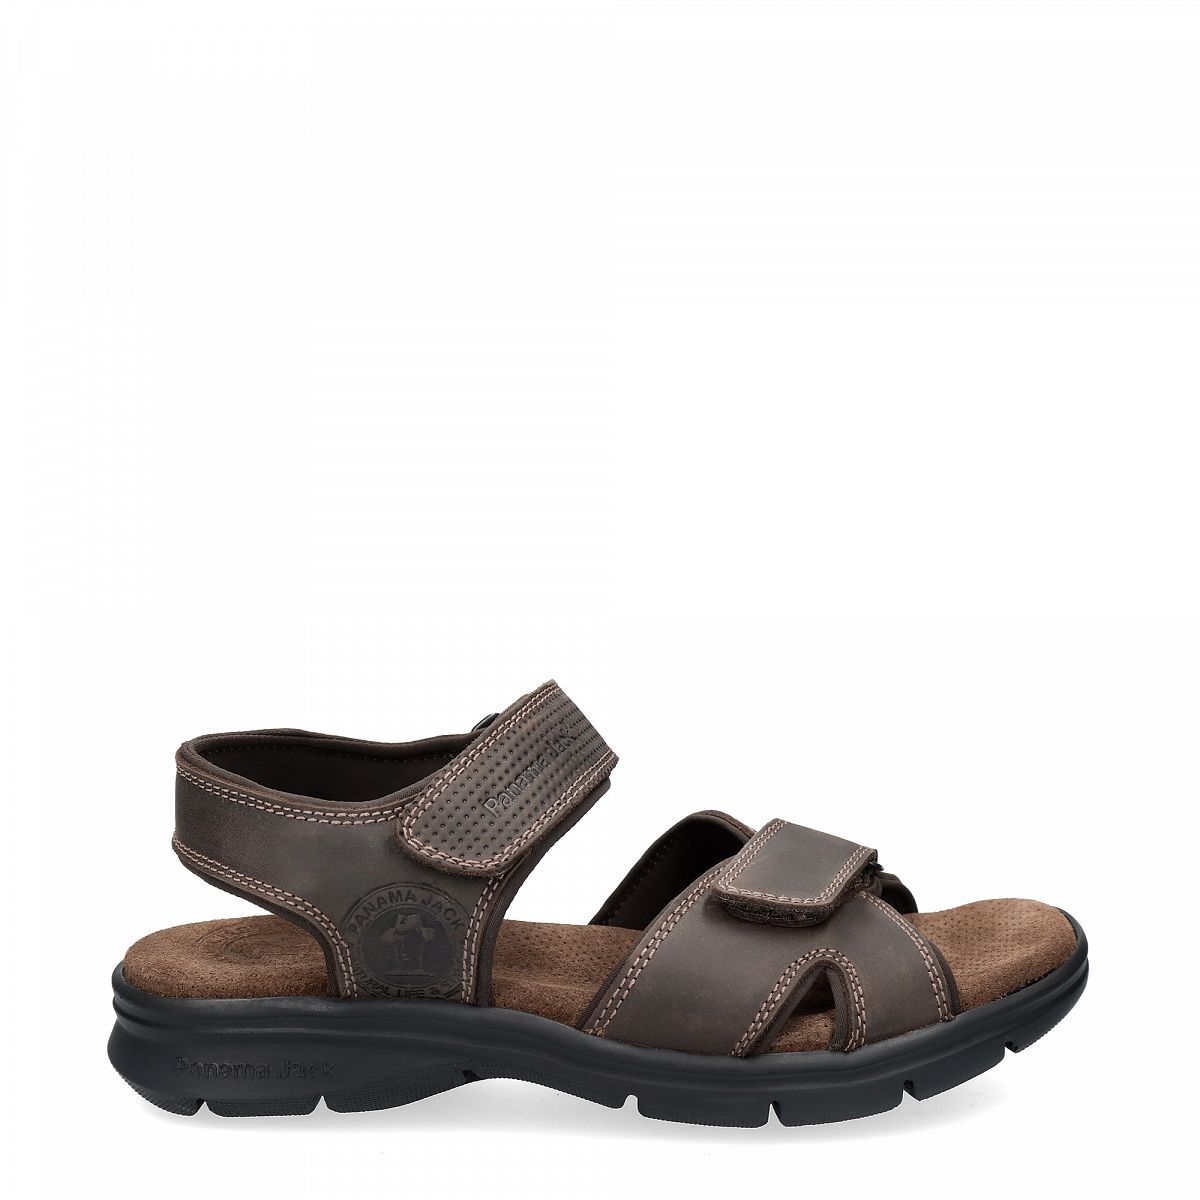 Summer Sandals SANDERS BASICS brown | PANAMA JACK®